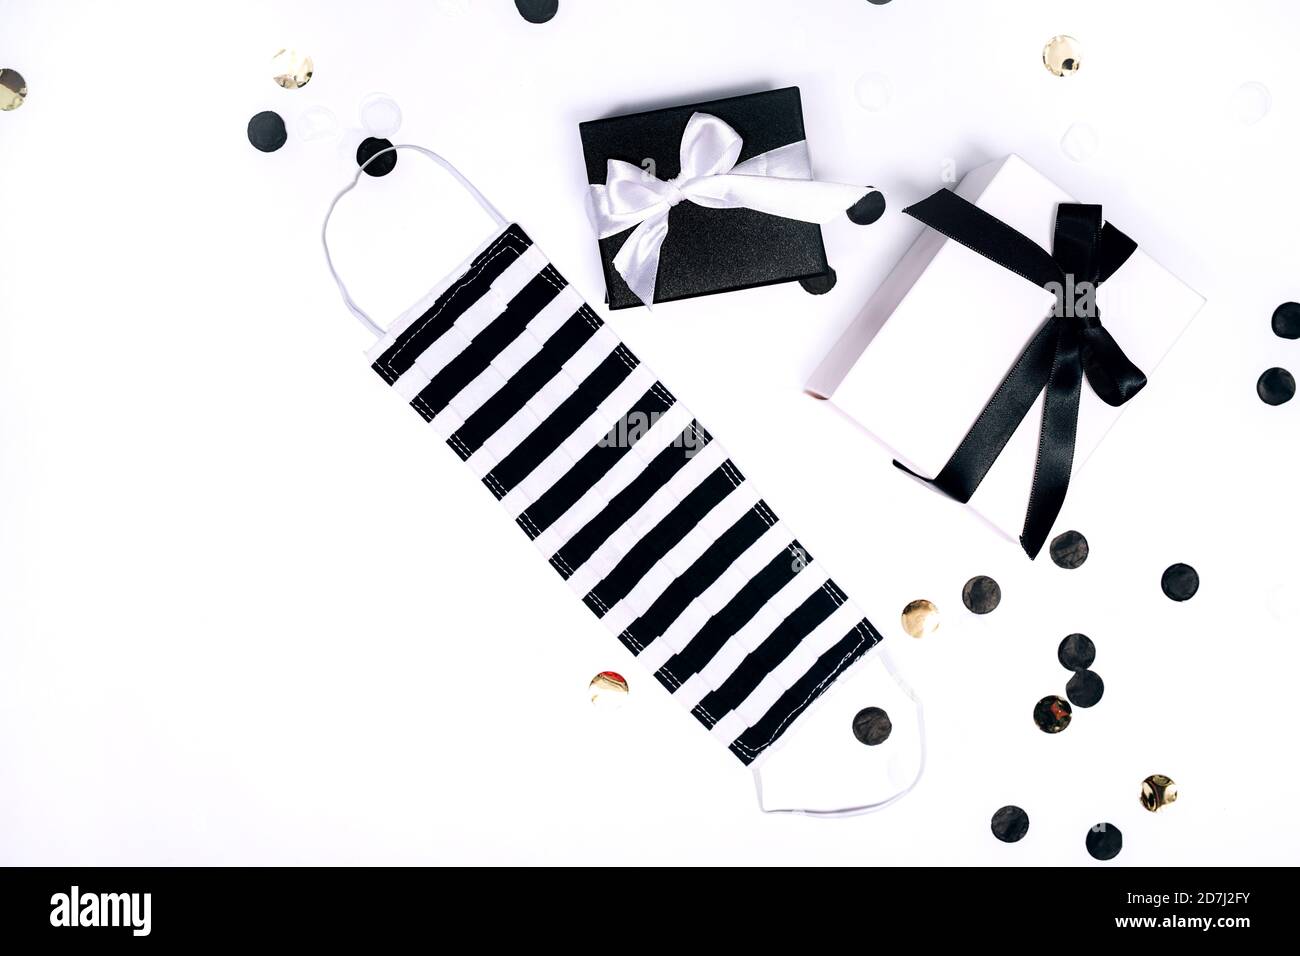 Schwarz-weiße Geschenk- oder Geschenkschachteln, handgemachte Gesichtsmaske und Konfetti auf weißem Hintergrund. Flache Lay-Komposition für Geburtstag, Weihnachten, Hochzeit. Soziale Gespiede. Stockfoto